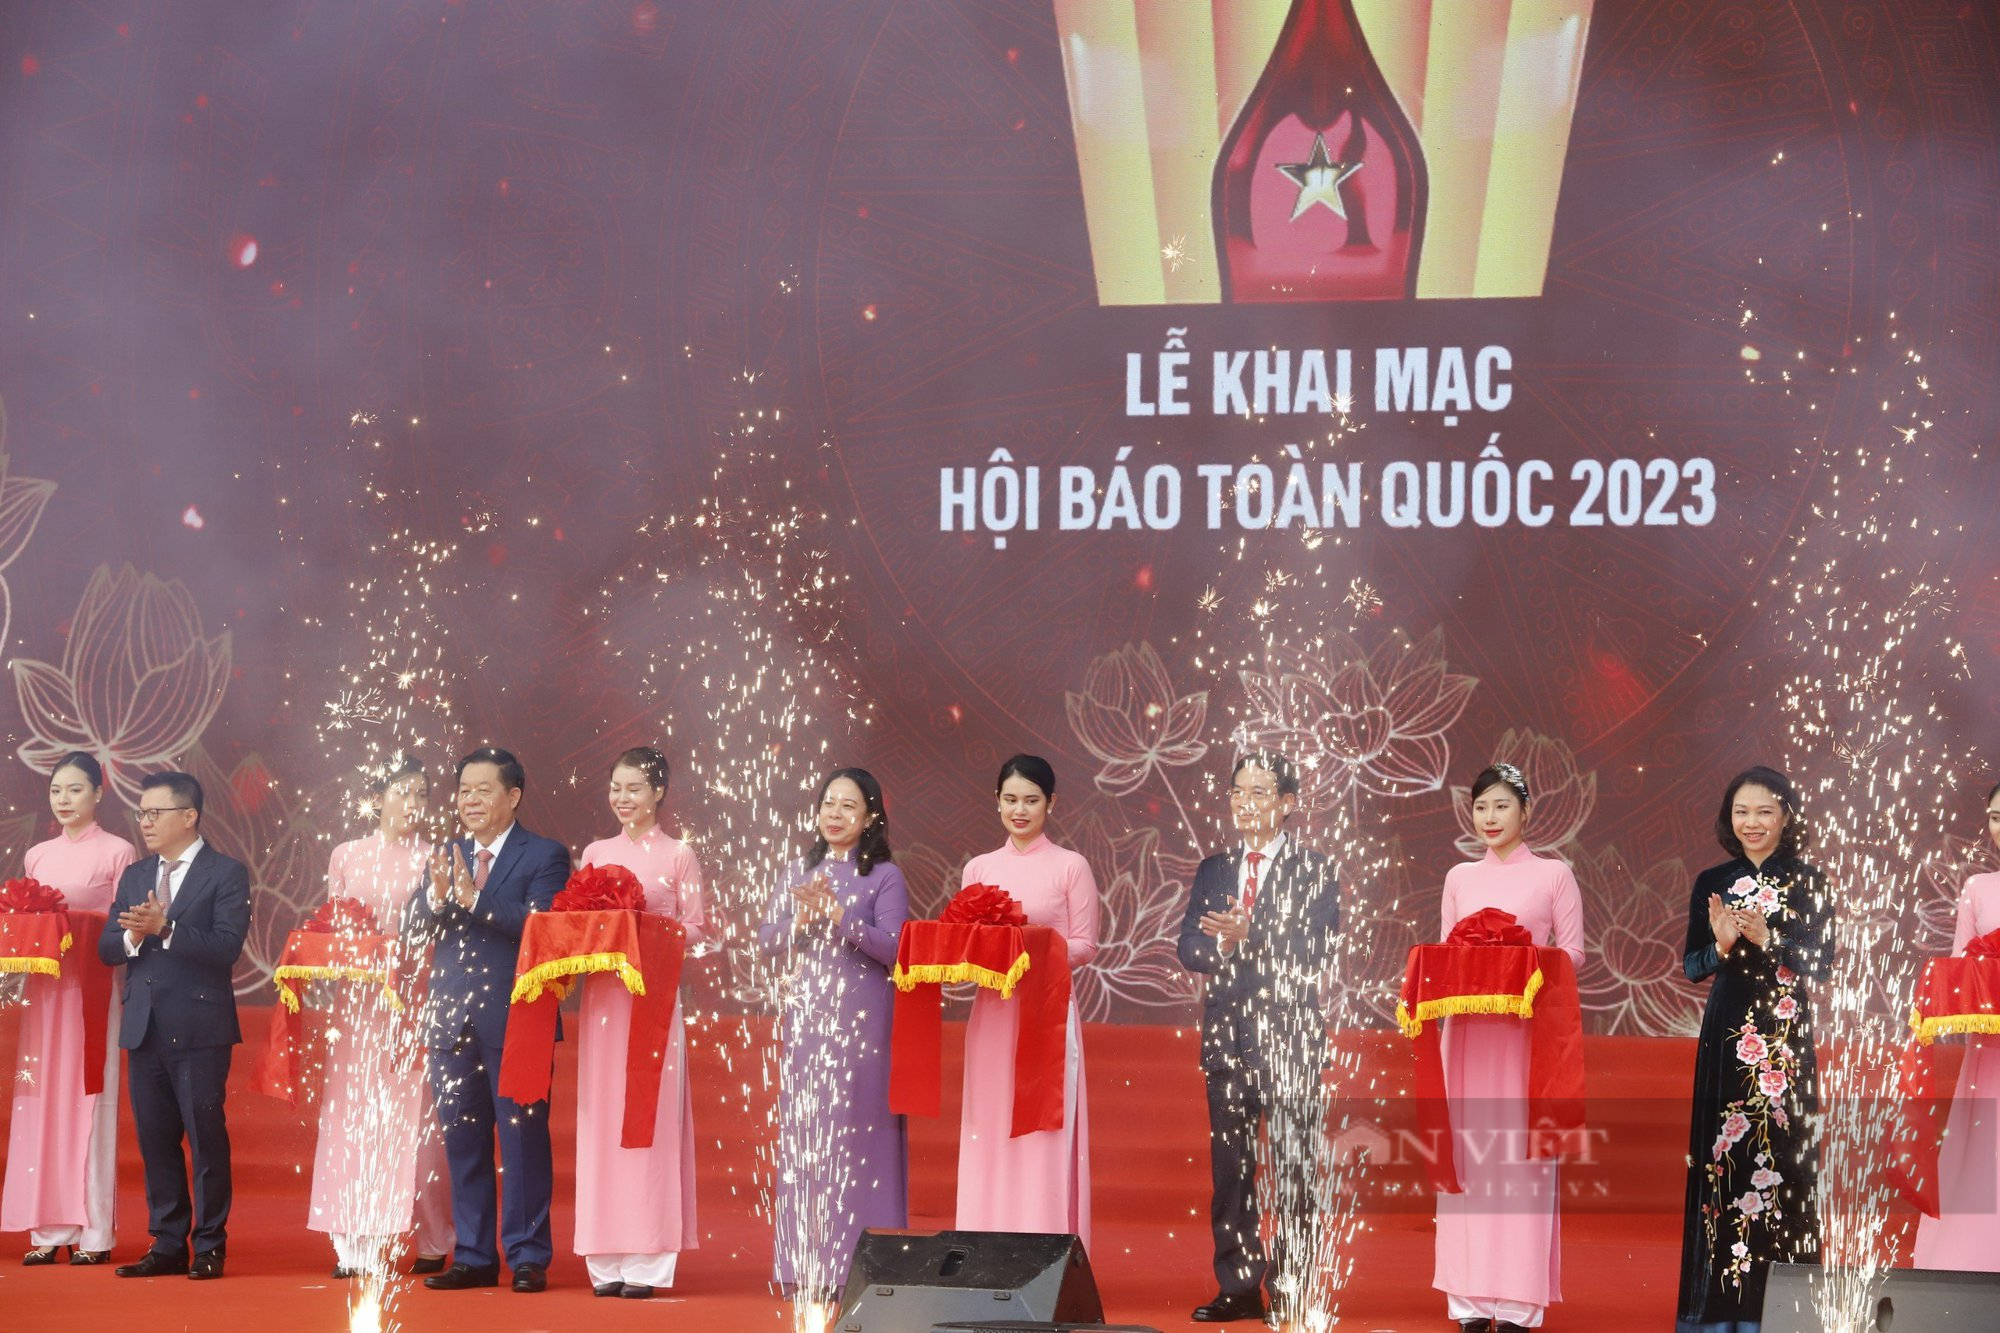 Lãnh đạo Đảng, Nhà nước thăm gian trưng bày Báo NTNN/Dân Việt tại Hội báo 2023 - Ảnh 1.